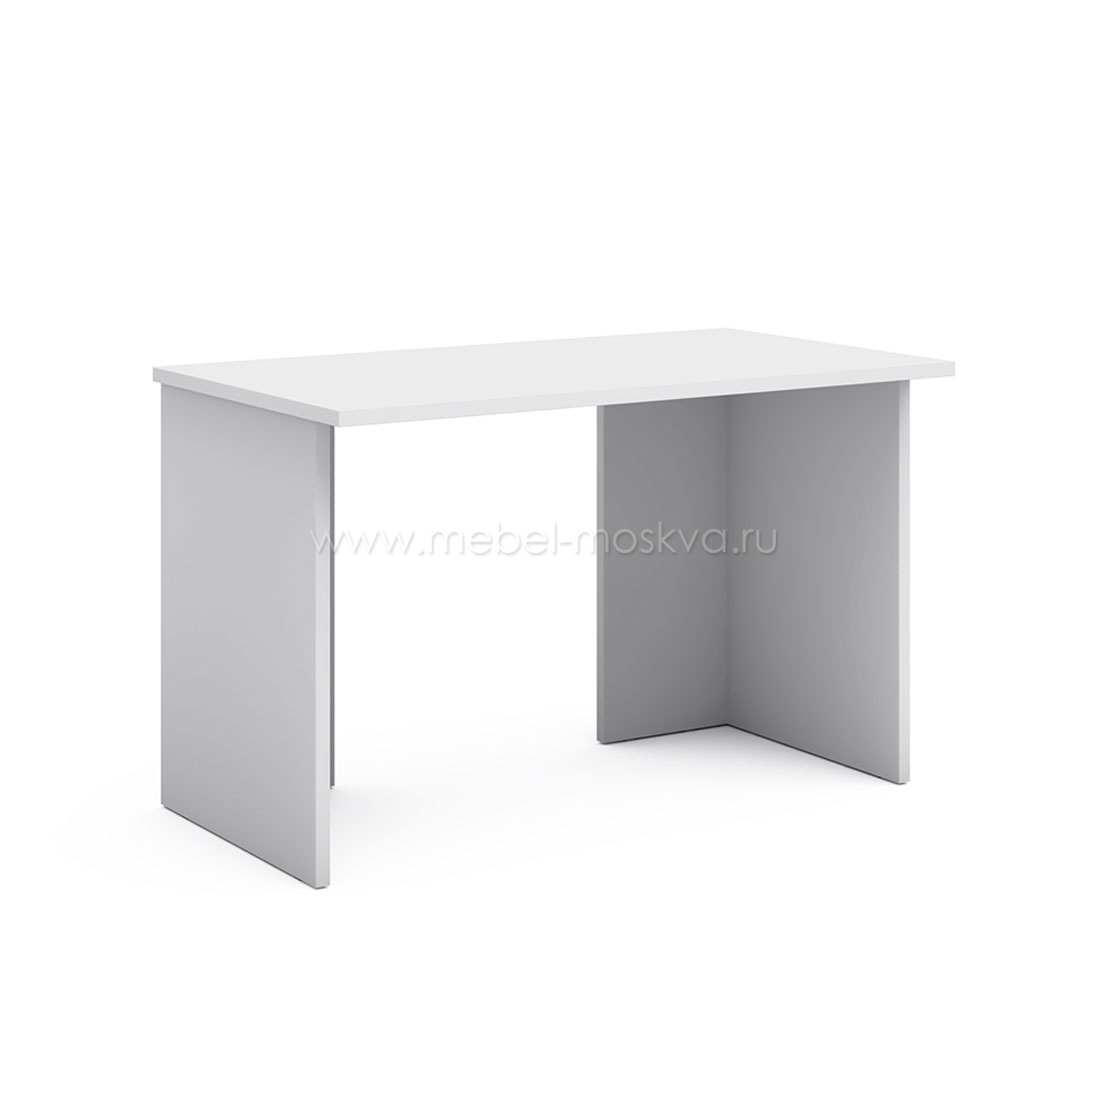 Письменный стол 120 см Магнолия (белый матовый)